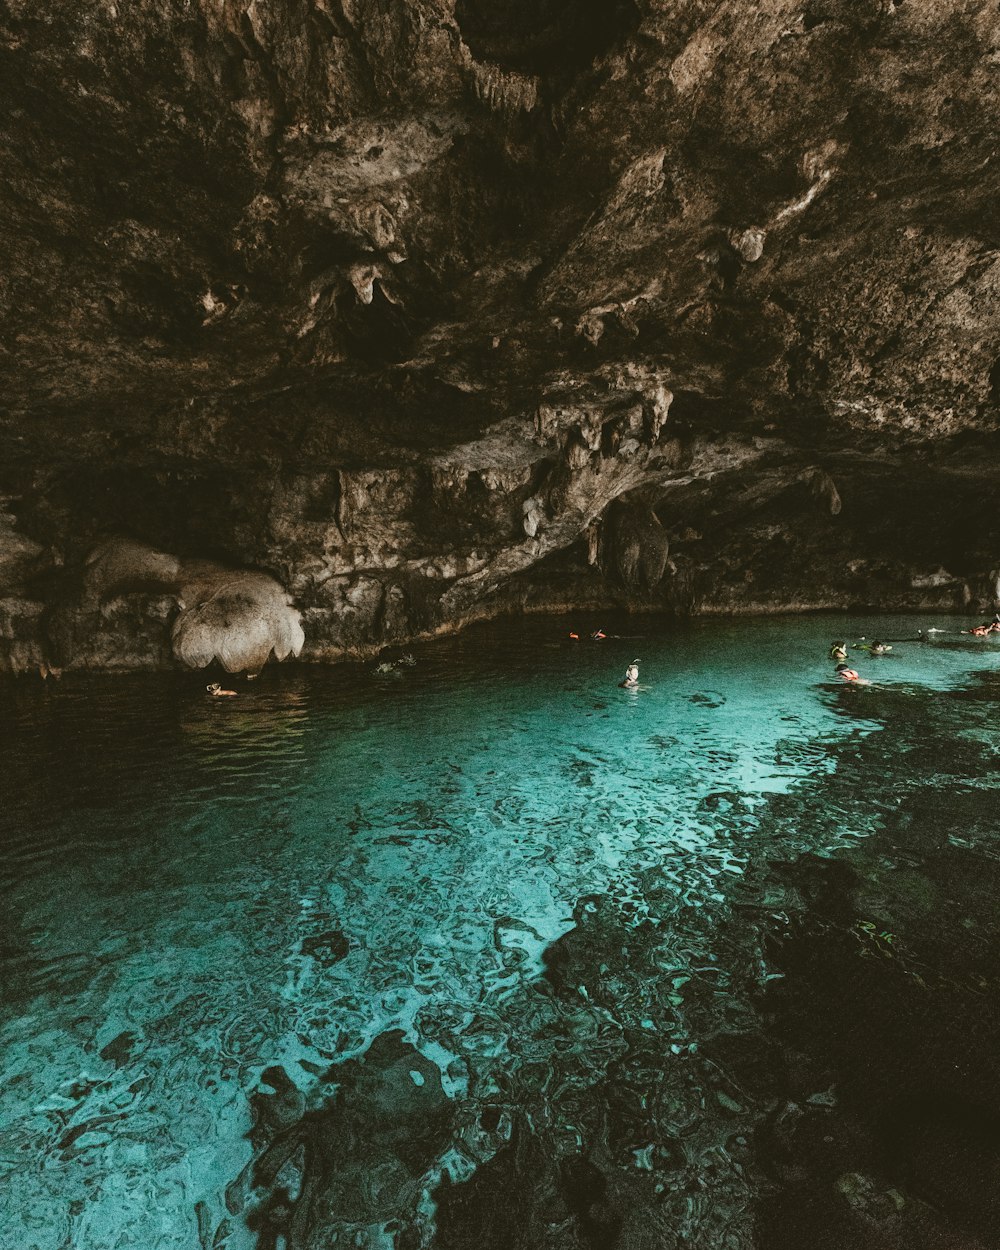 동굴이 있는 수역에서 수영하는 사람들의 사진